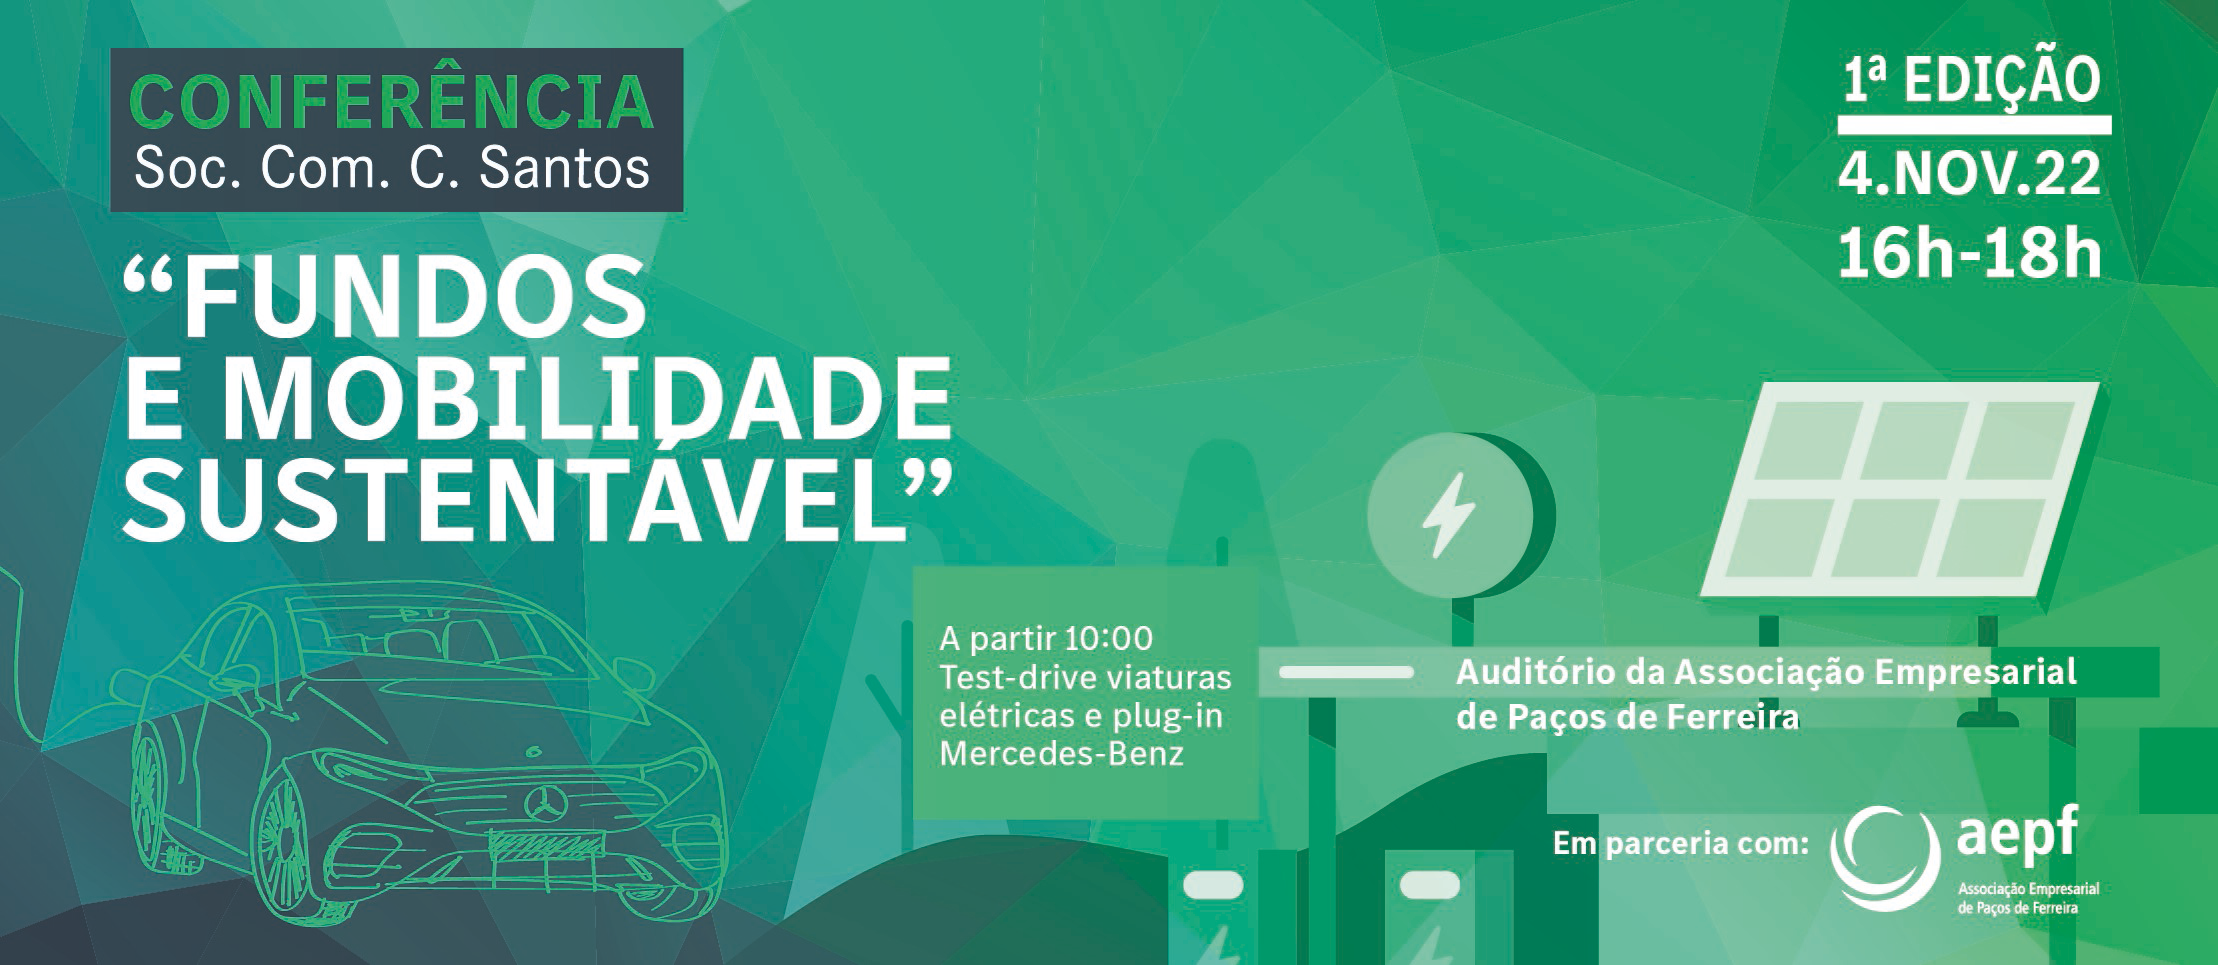 Associação Empresarial de Paços de Ferreira e Soc. Com. C. Santos promovem conferência “Fundos e Mobilidade Sustentável”